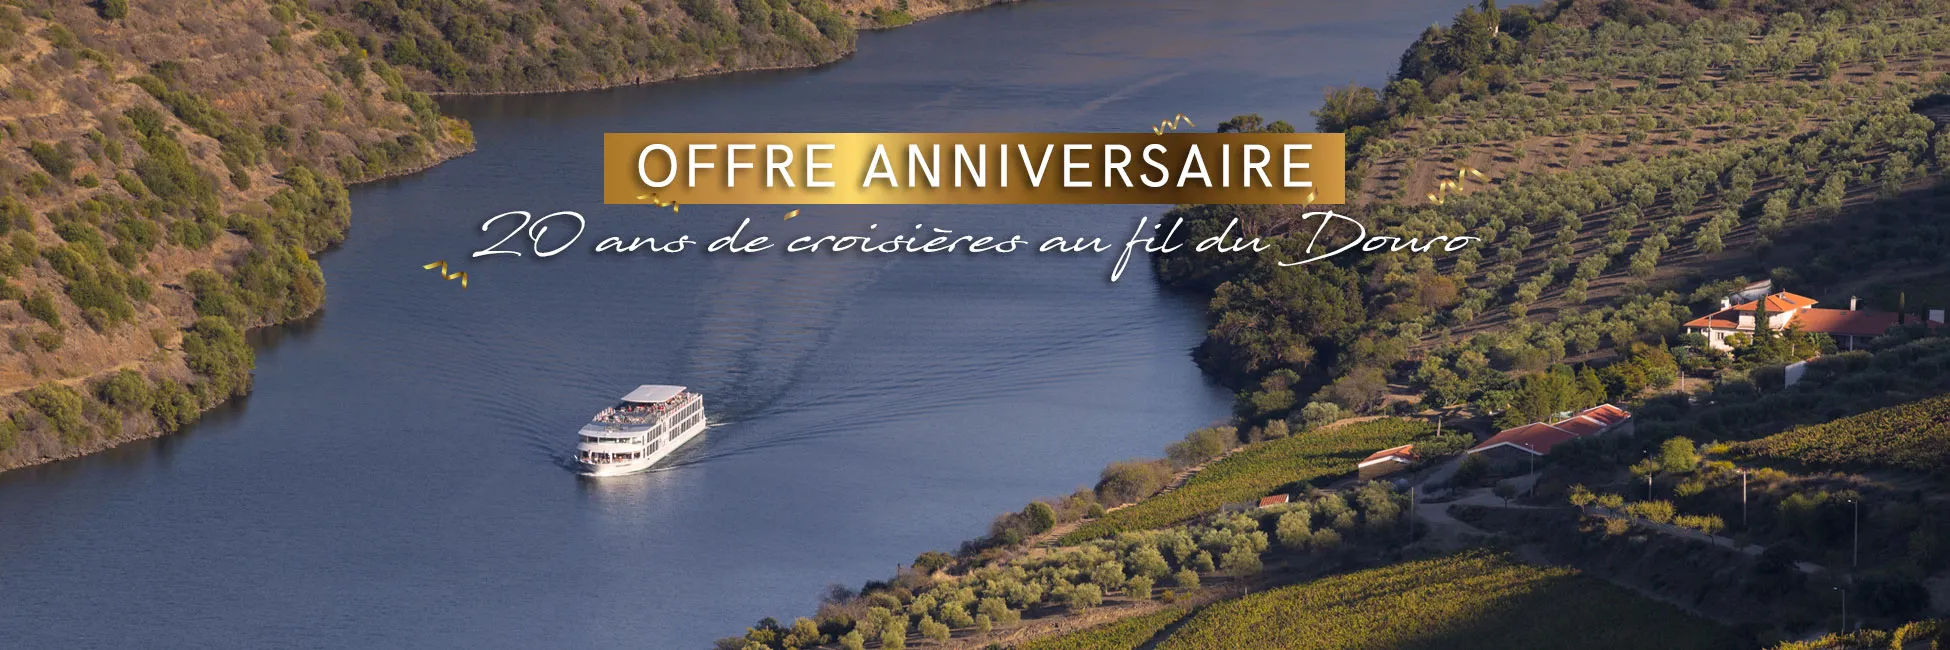 Offre spéciale 20 ans de navigation sur le Douro 